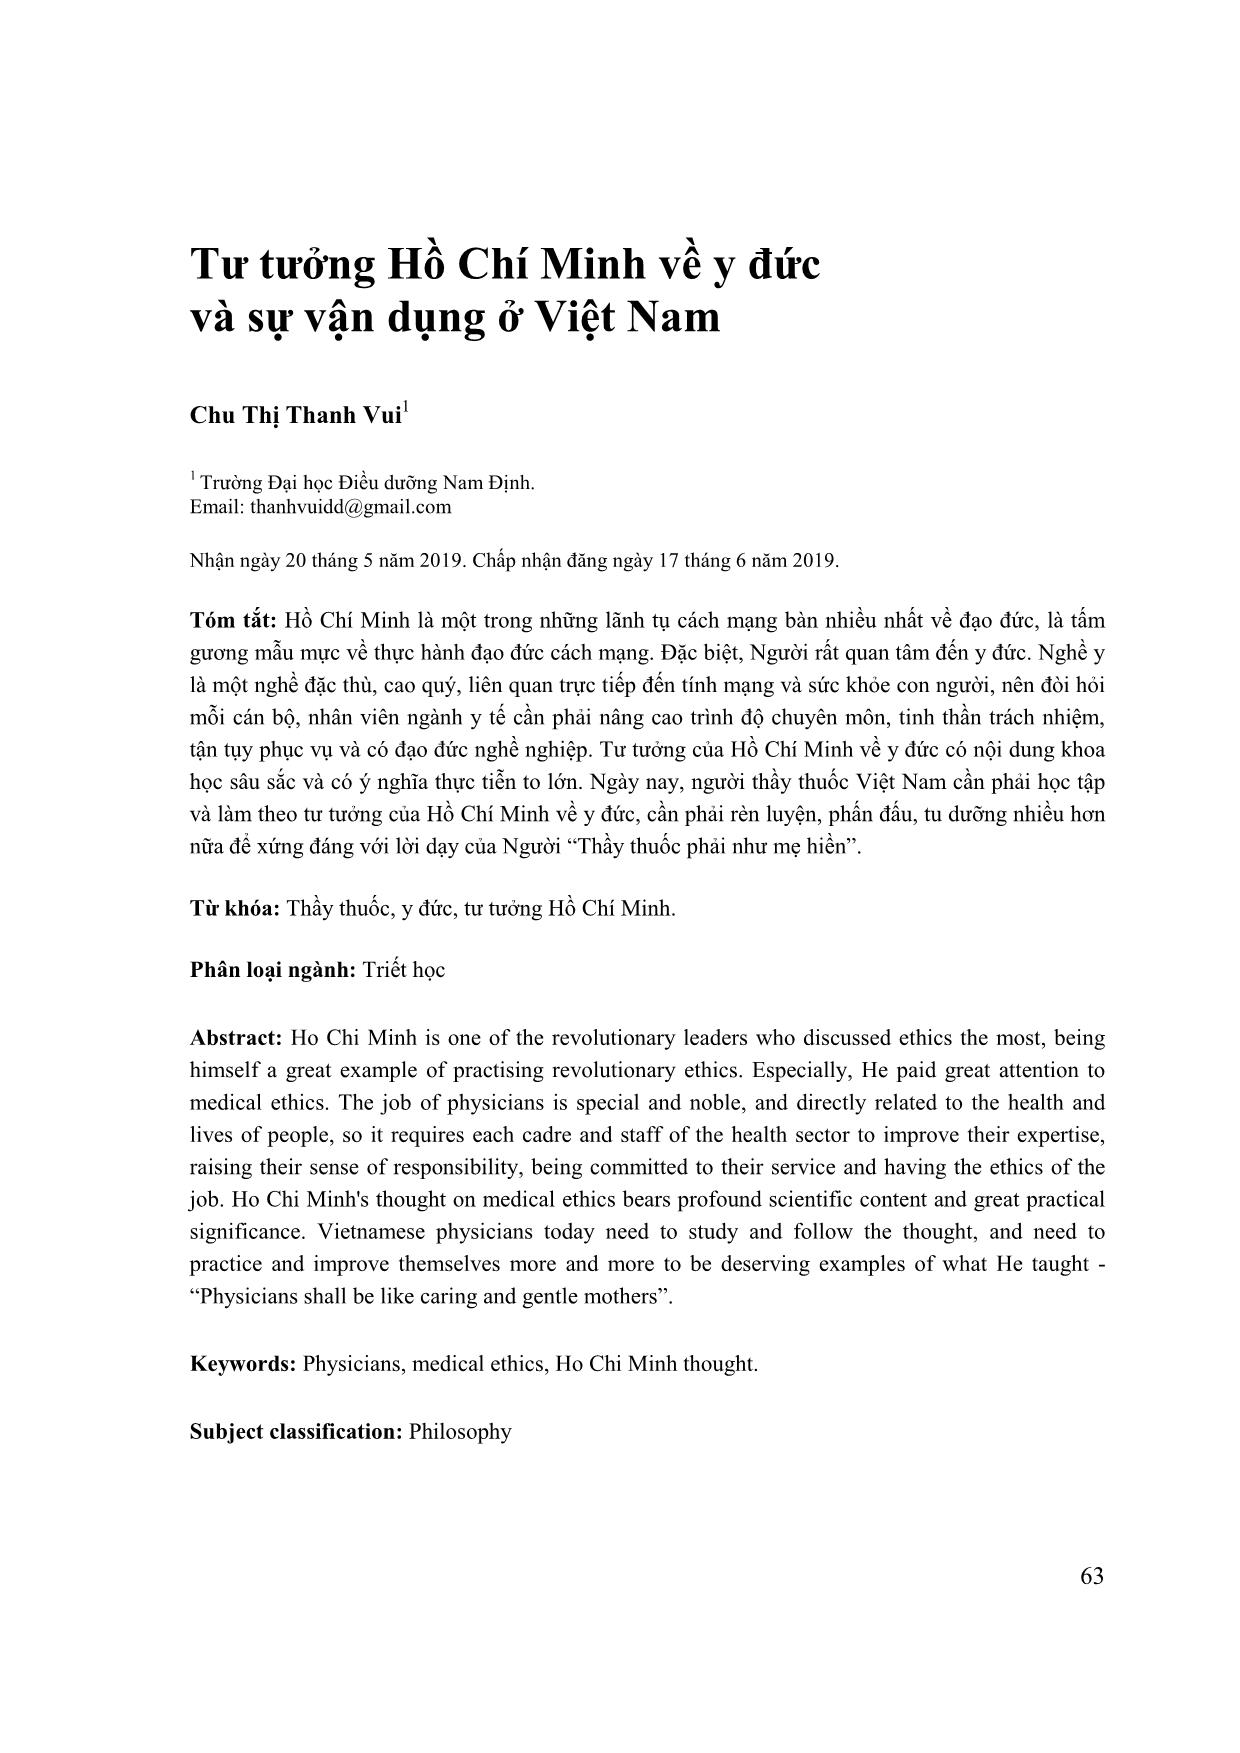 Tư tưởng Hồ Chí Minh về y đức và sự vận dụng ở Việt Nam trang 1